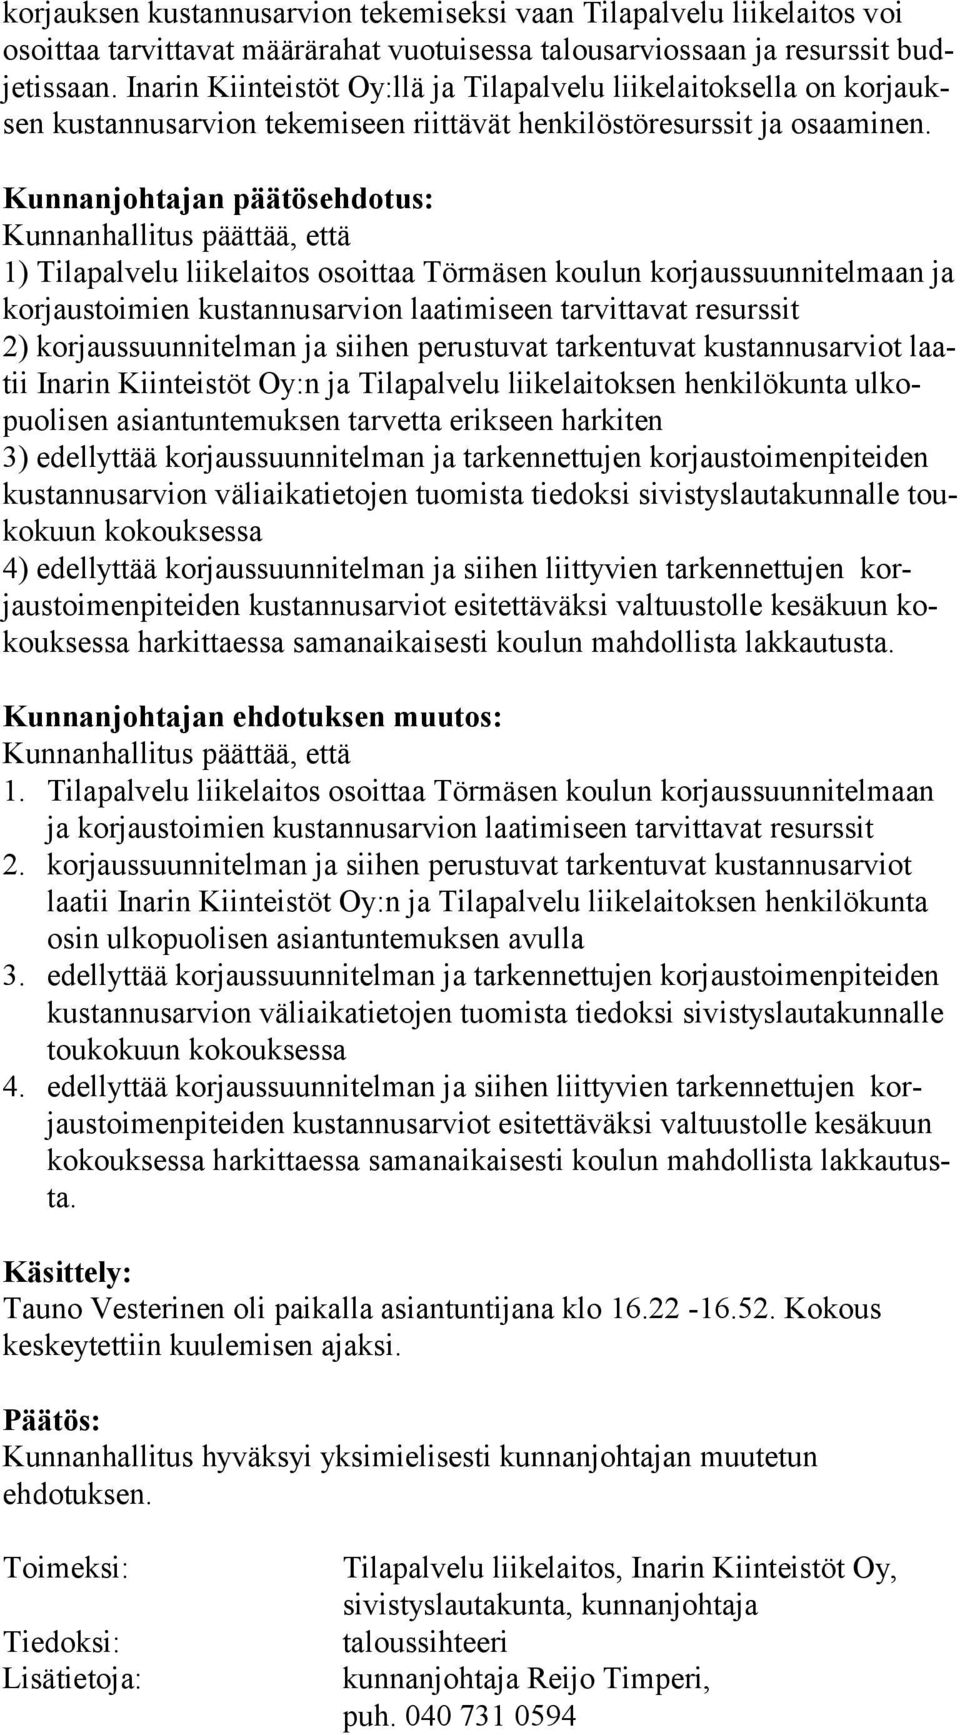 Kunnanjohtajan päätösehdotus: Kunnanhallitus päättää, että 1) Tilapalvelu liikelaitos osoittaa Törmäsen koulun korjaussuunnitelmaan ja kor jaus toi mien kustannusarvion laatimiseen tarvittavat